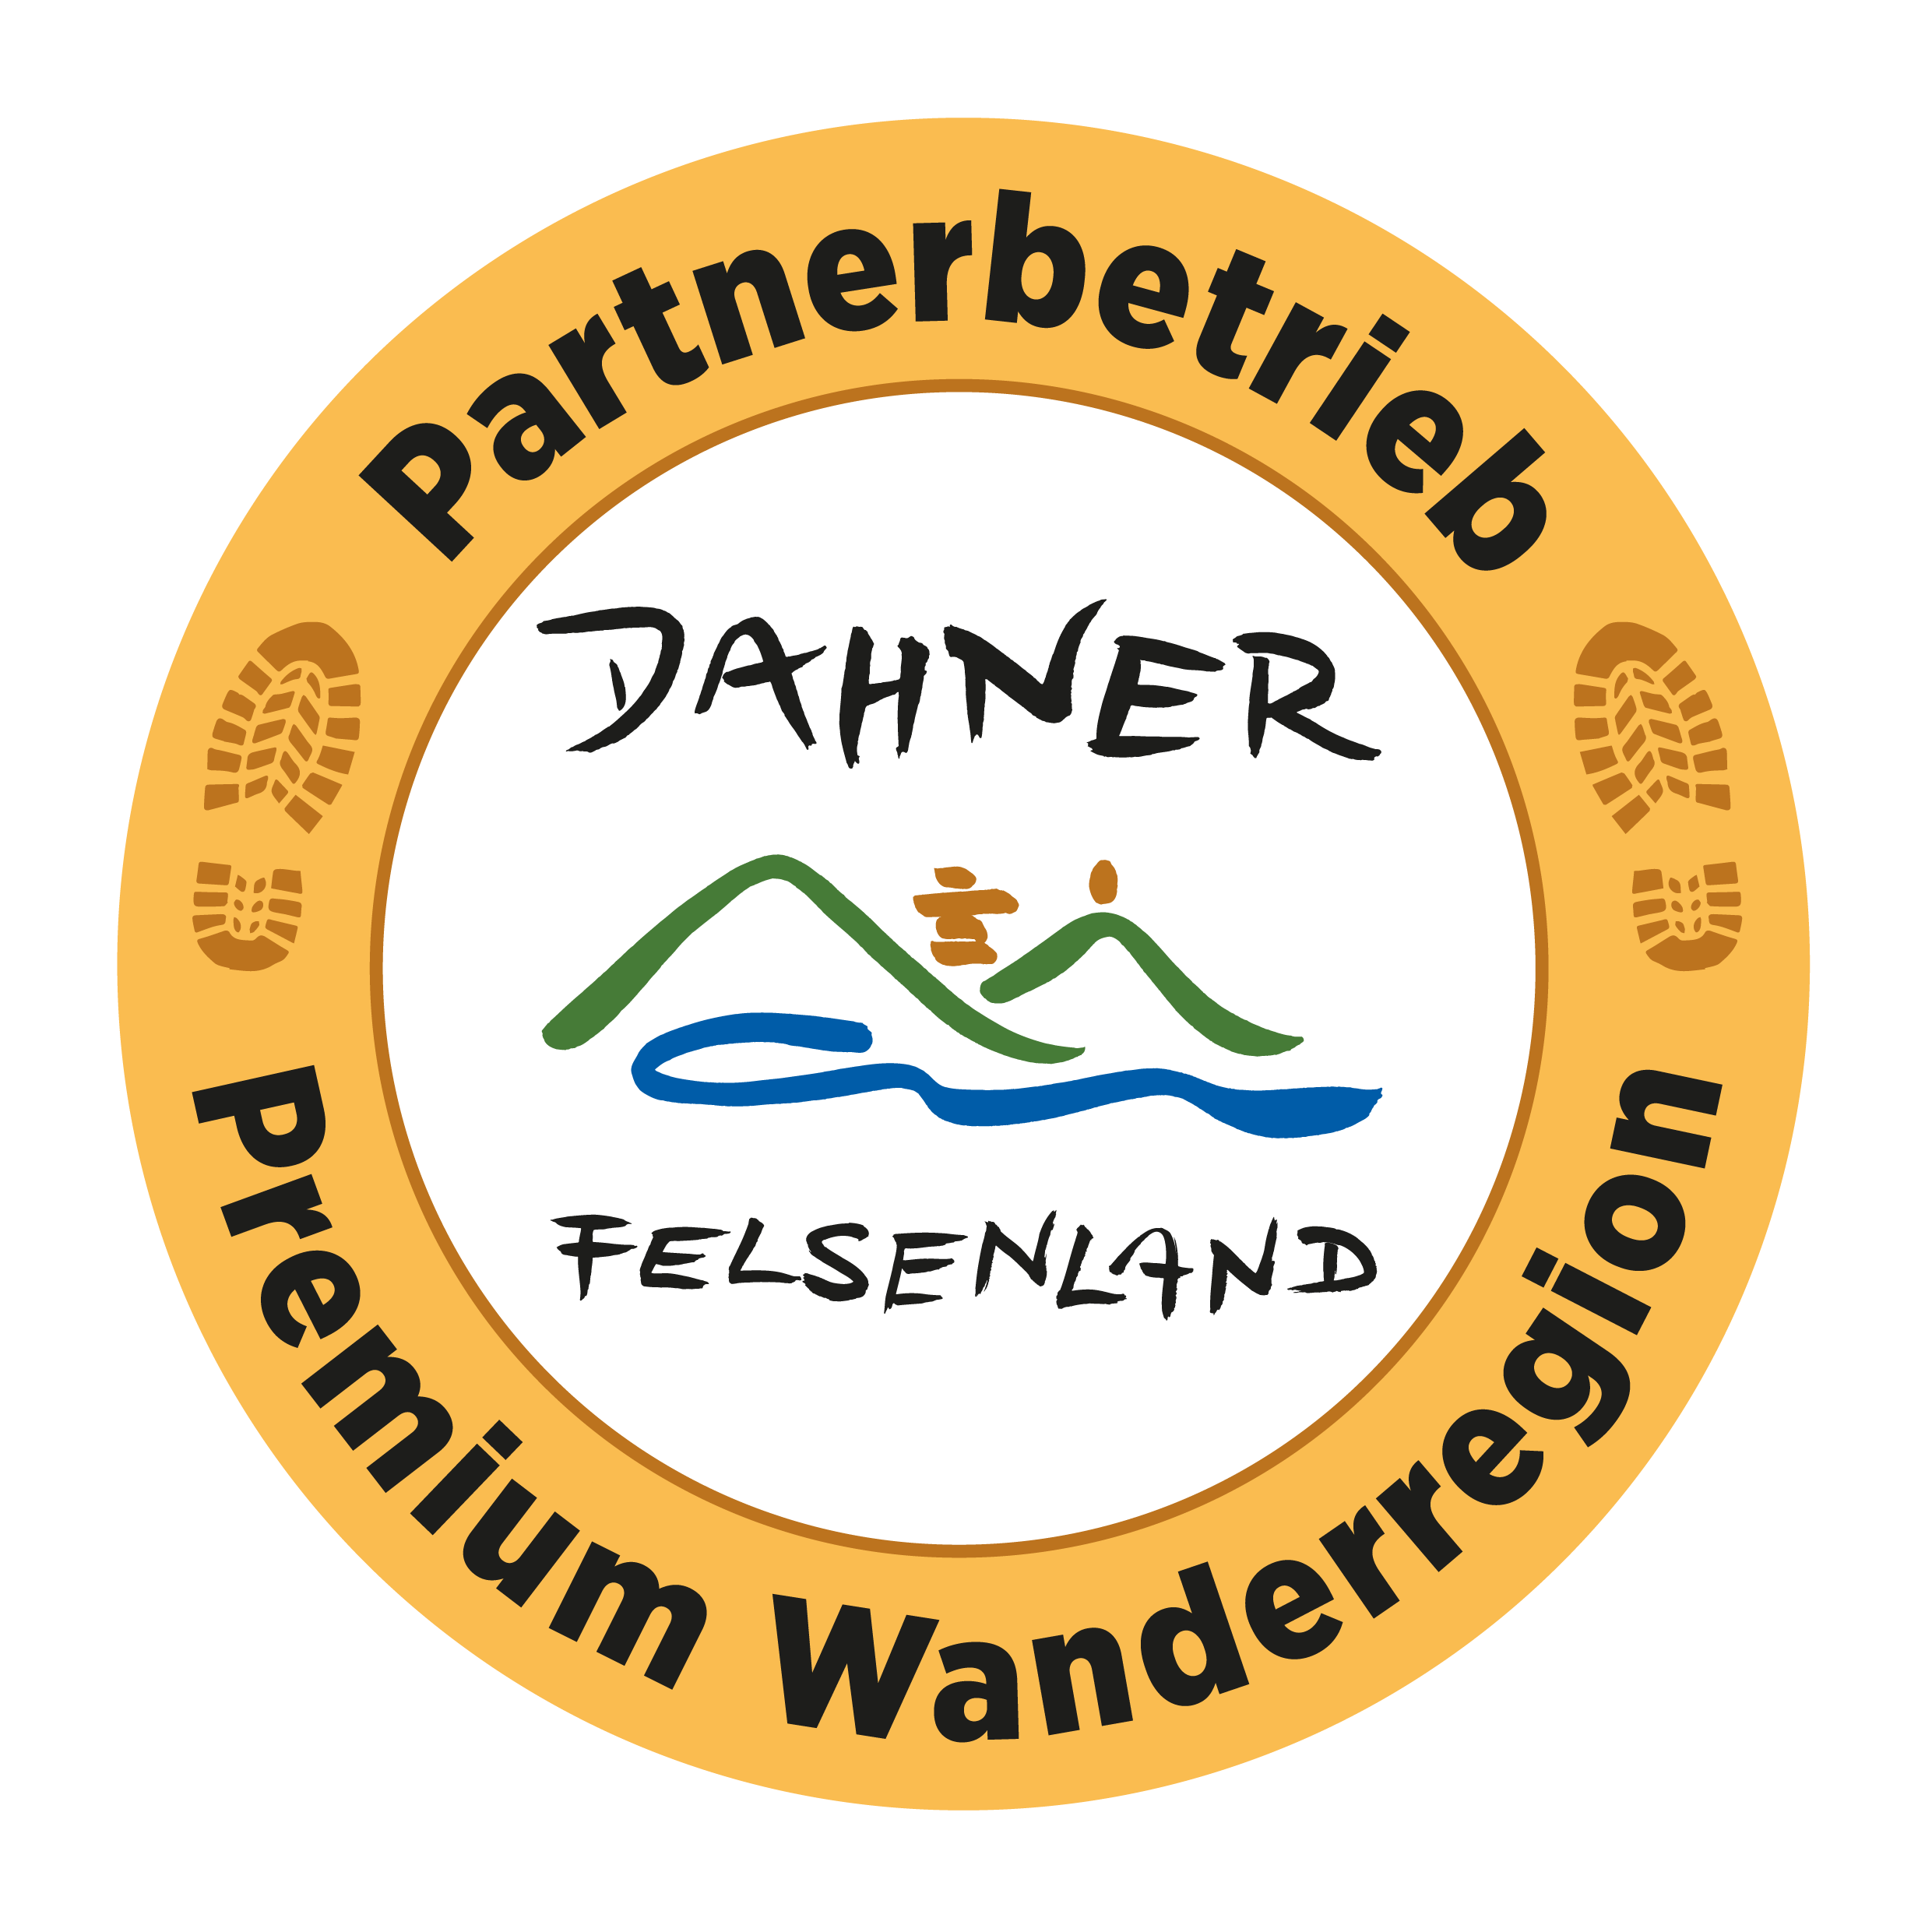 Partnerbetrieb Pfalz